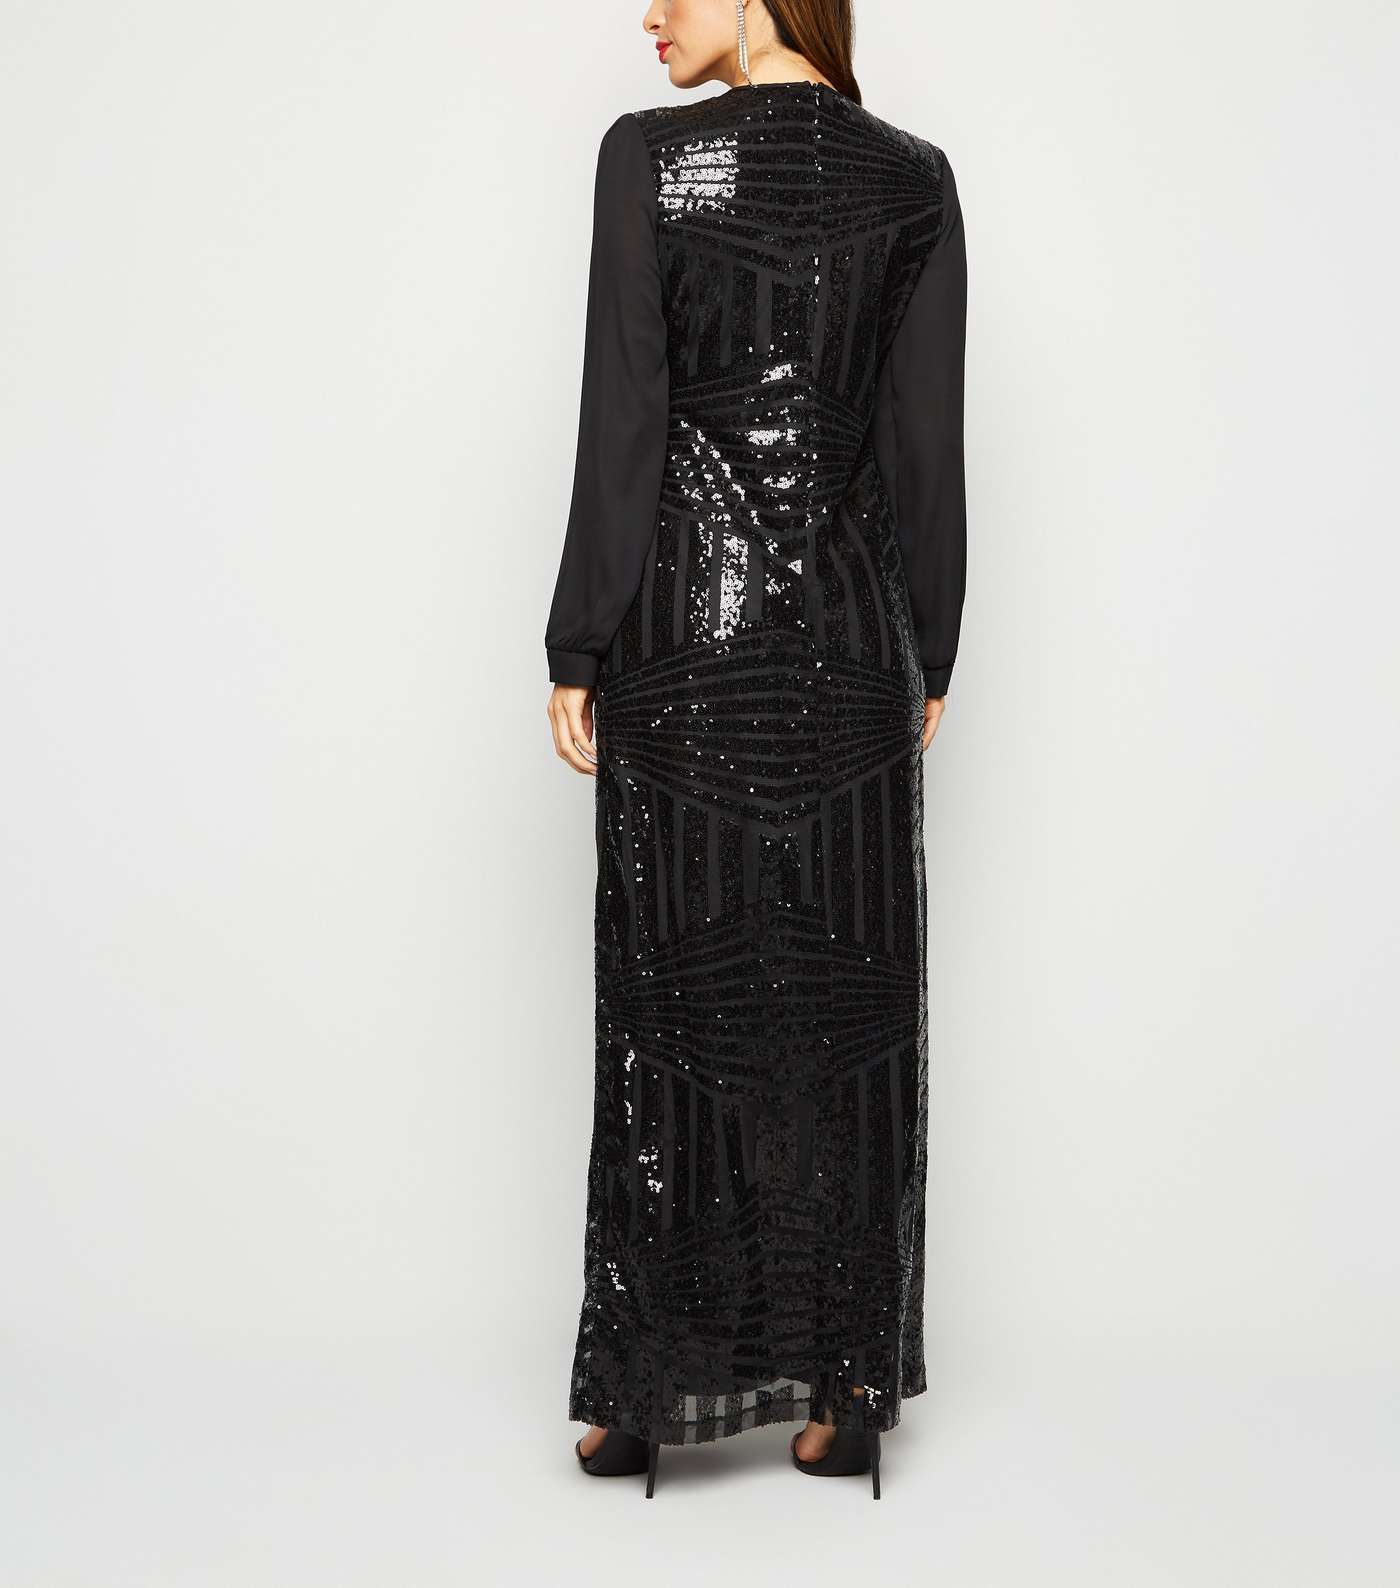 Mela Black Sequin Maxi Dress Image 2